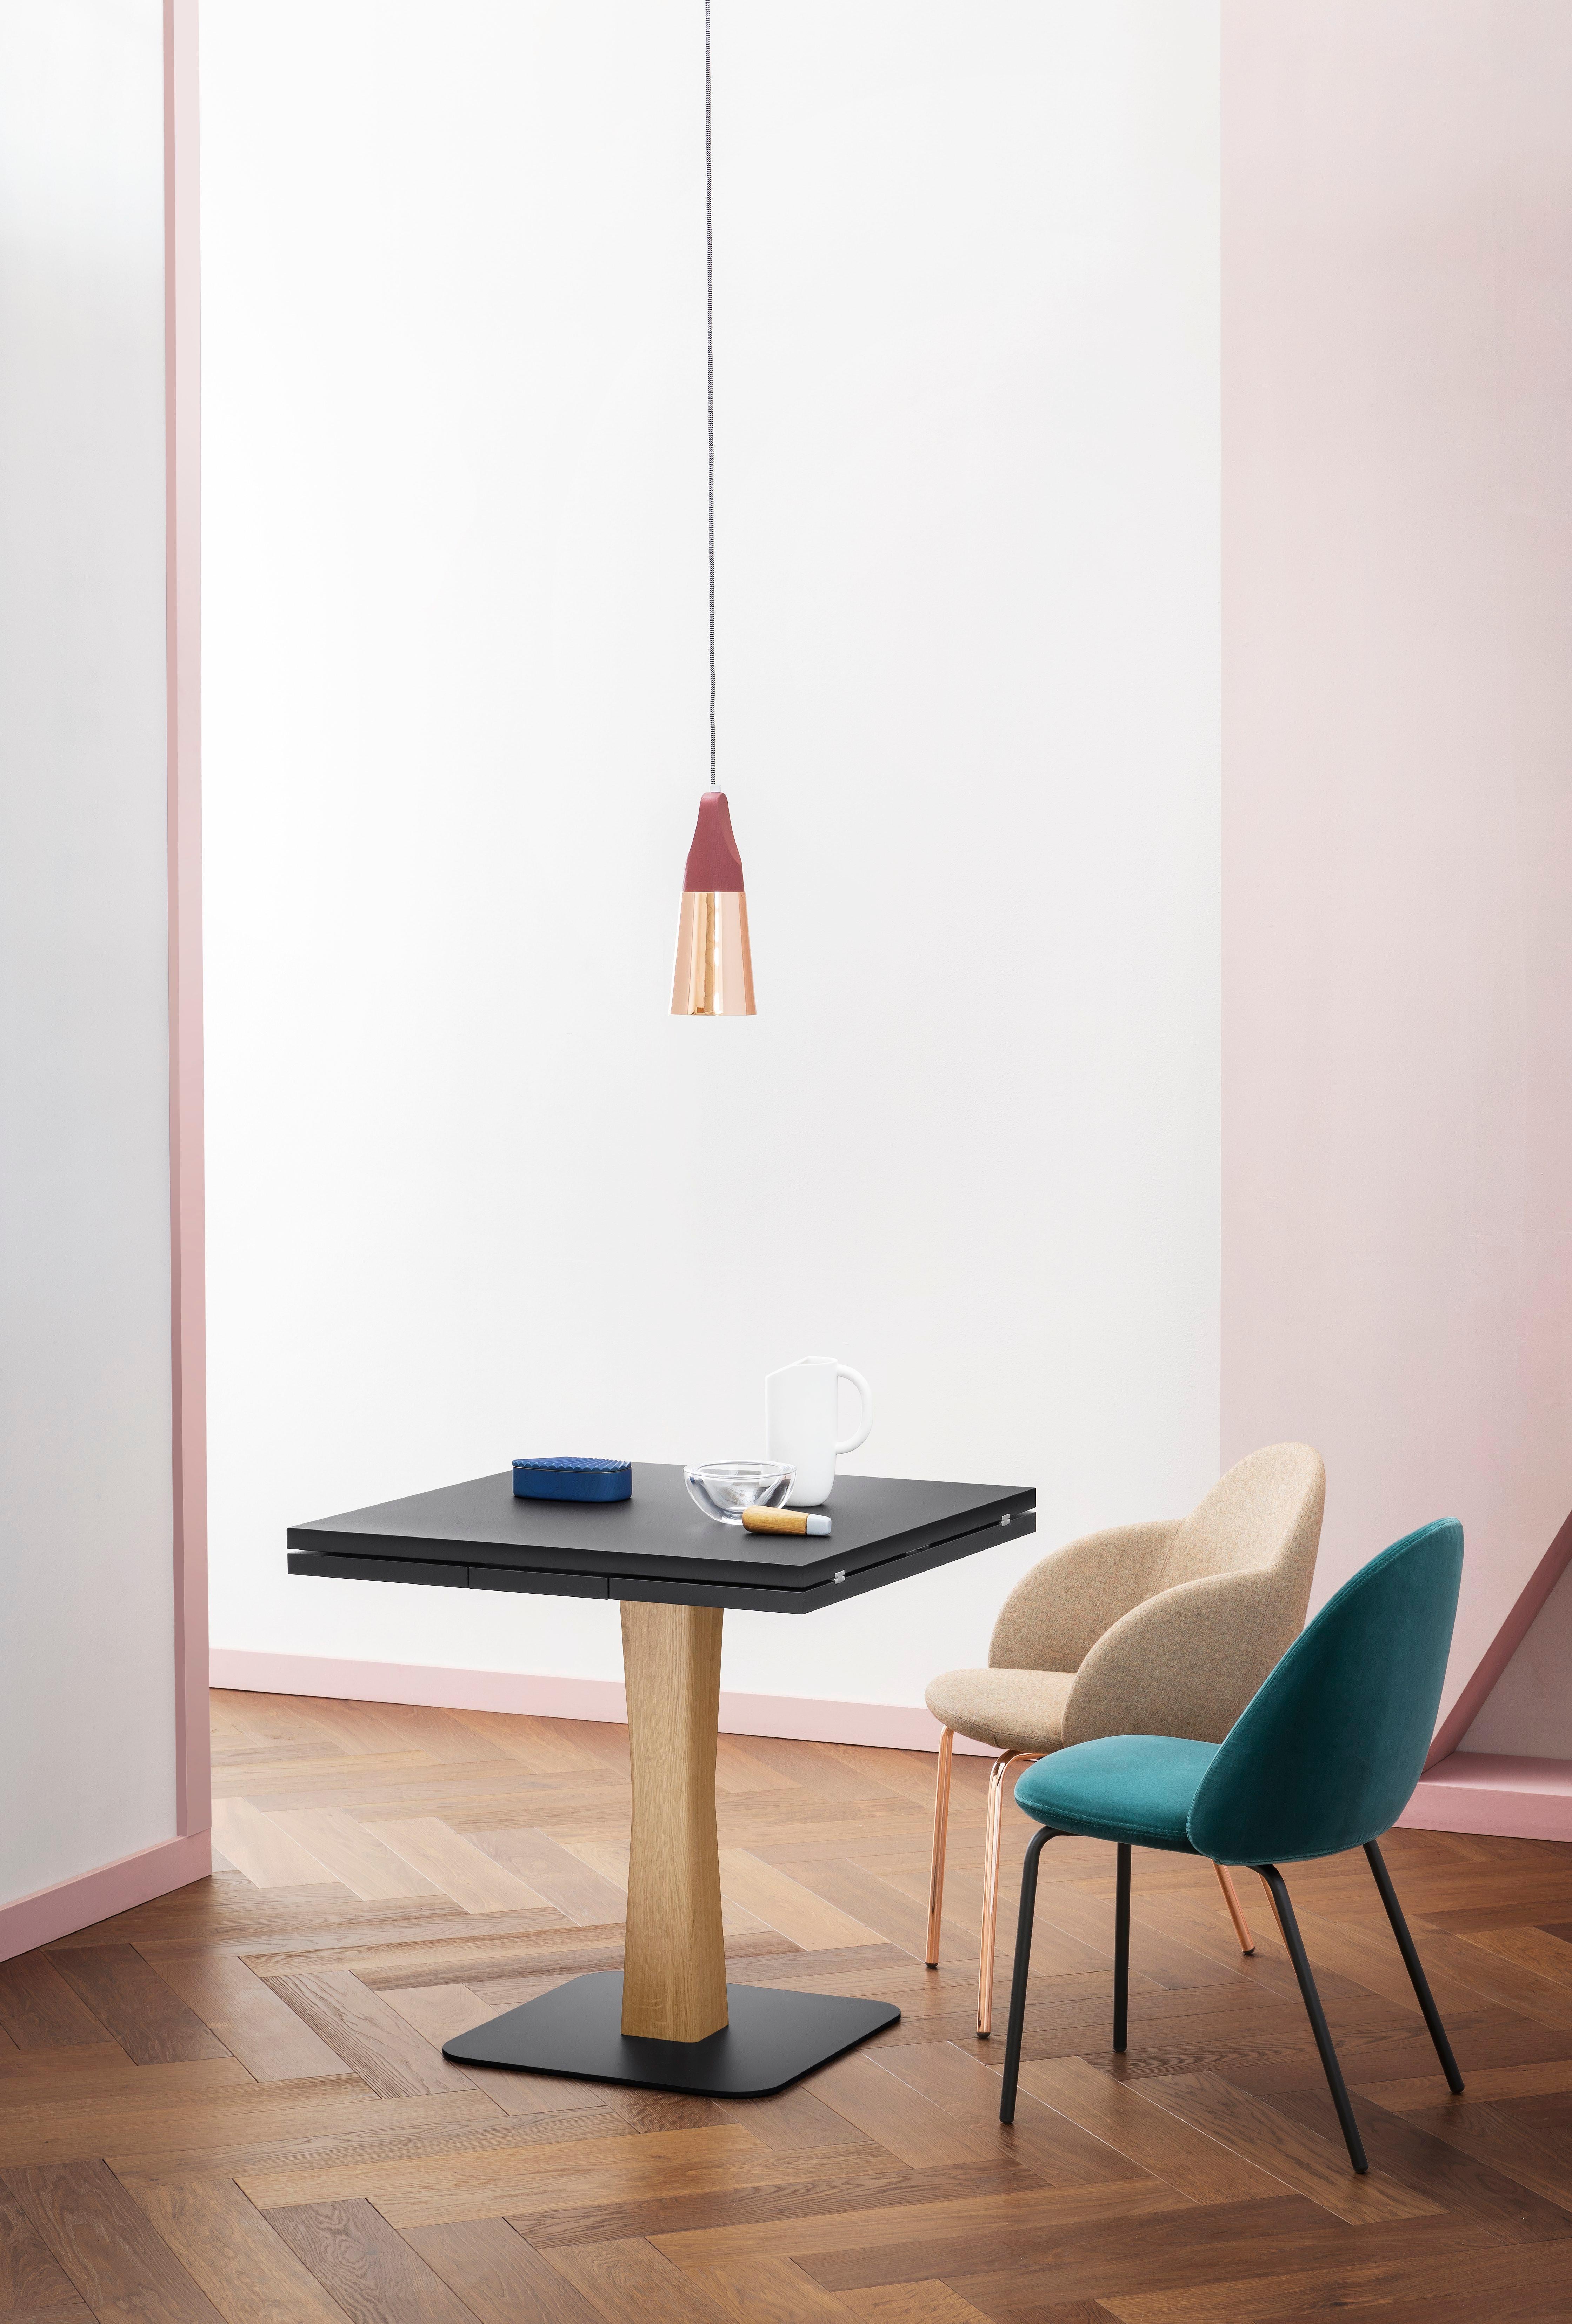 Gualtiero ist für kleinere, intimere Räume gedacht, vom Bistro bis zur kleinen Wohnung, wo ein ikonischer, praktischer Tisch seinen Platz findet.

Ausziehbarer Tisch mit Metallplatte, schwarz oder weiß lackiert. Der Rahmen ist in Eiche, Nussbaum